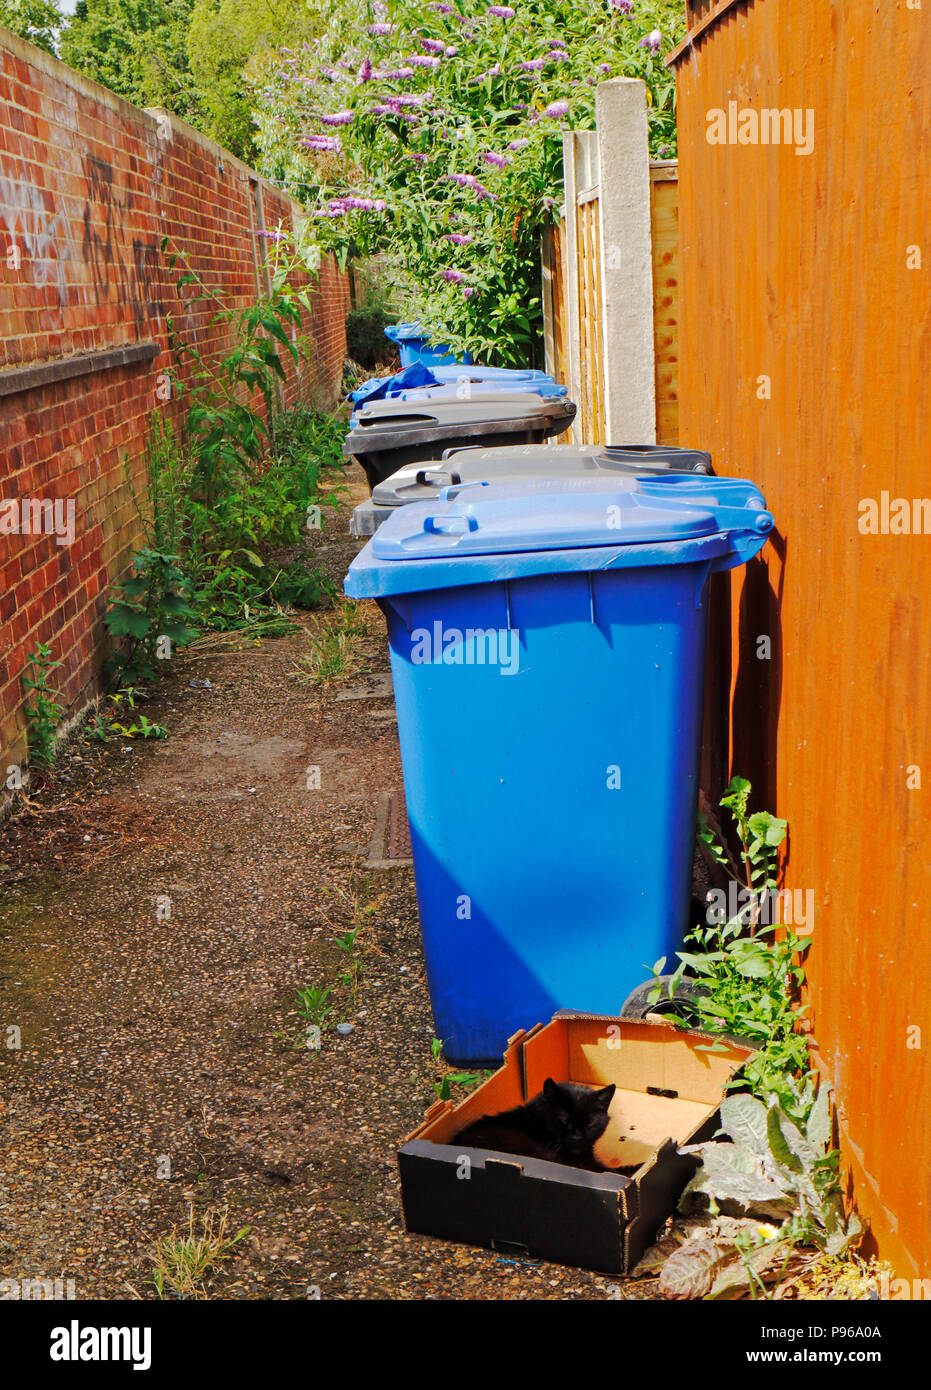 Abfall und Recycling Bins mit einer Katze in einer Kiste in einer Gasse in Norwich, Norfolk, England, Vereinigtes Königreich, Europa. Stockfoto